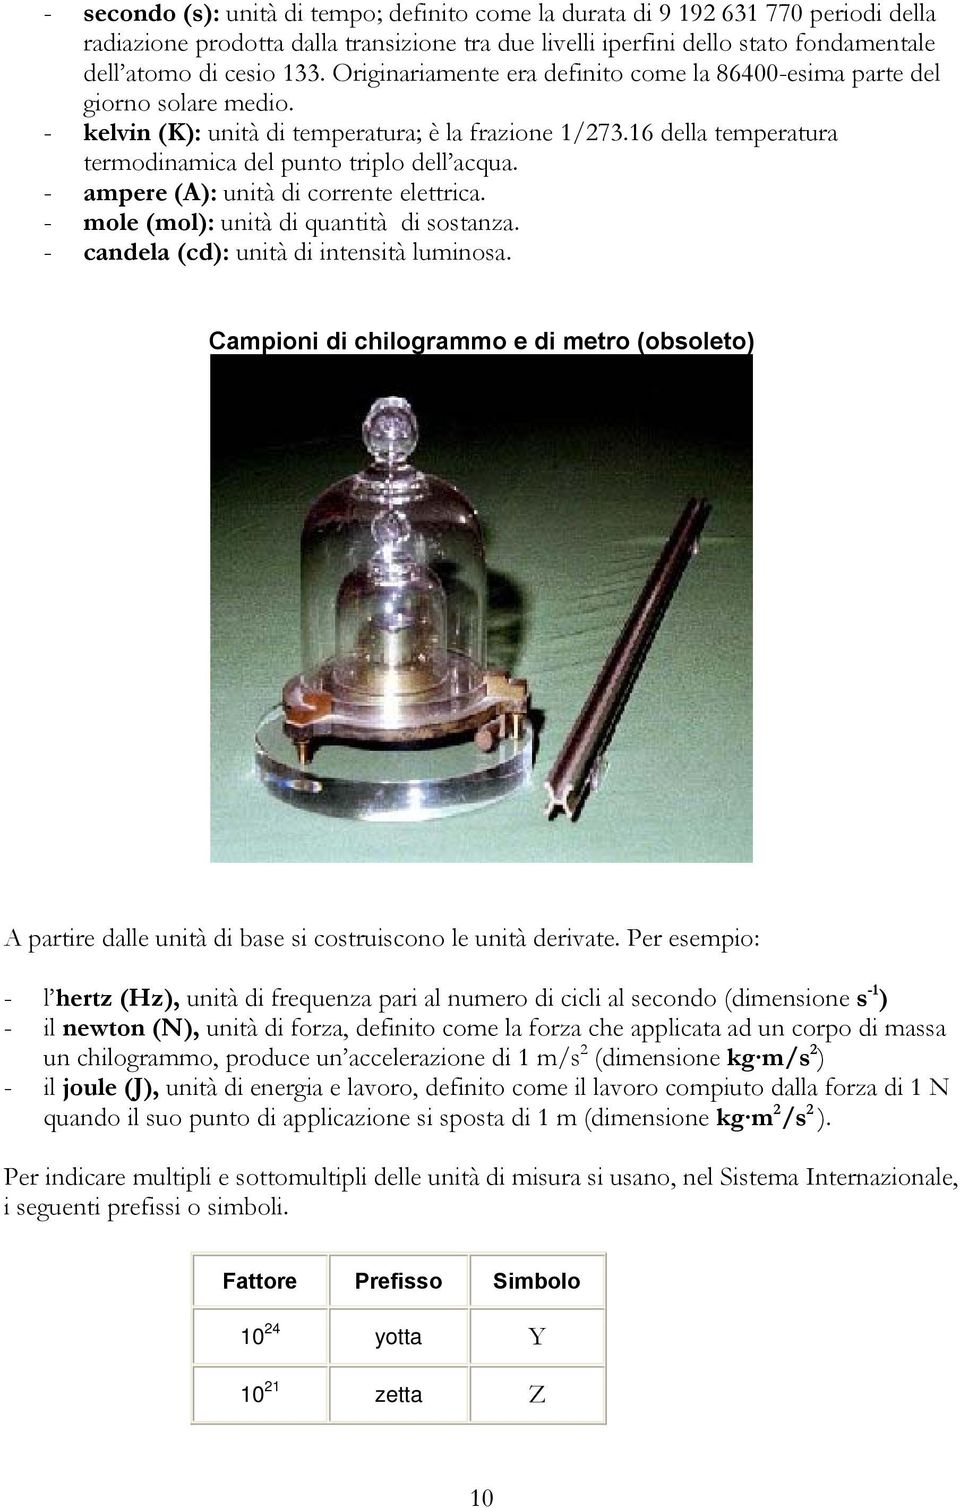 - ampere (A): untà d corrente elettrca. - mole (mol): untà d quanttà d sostanza. - candela (cd): untà d ntenstà lumnosa.